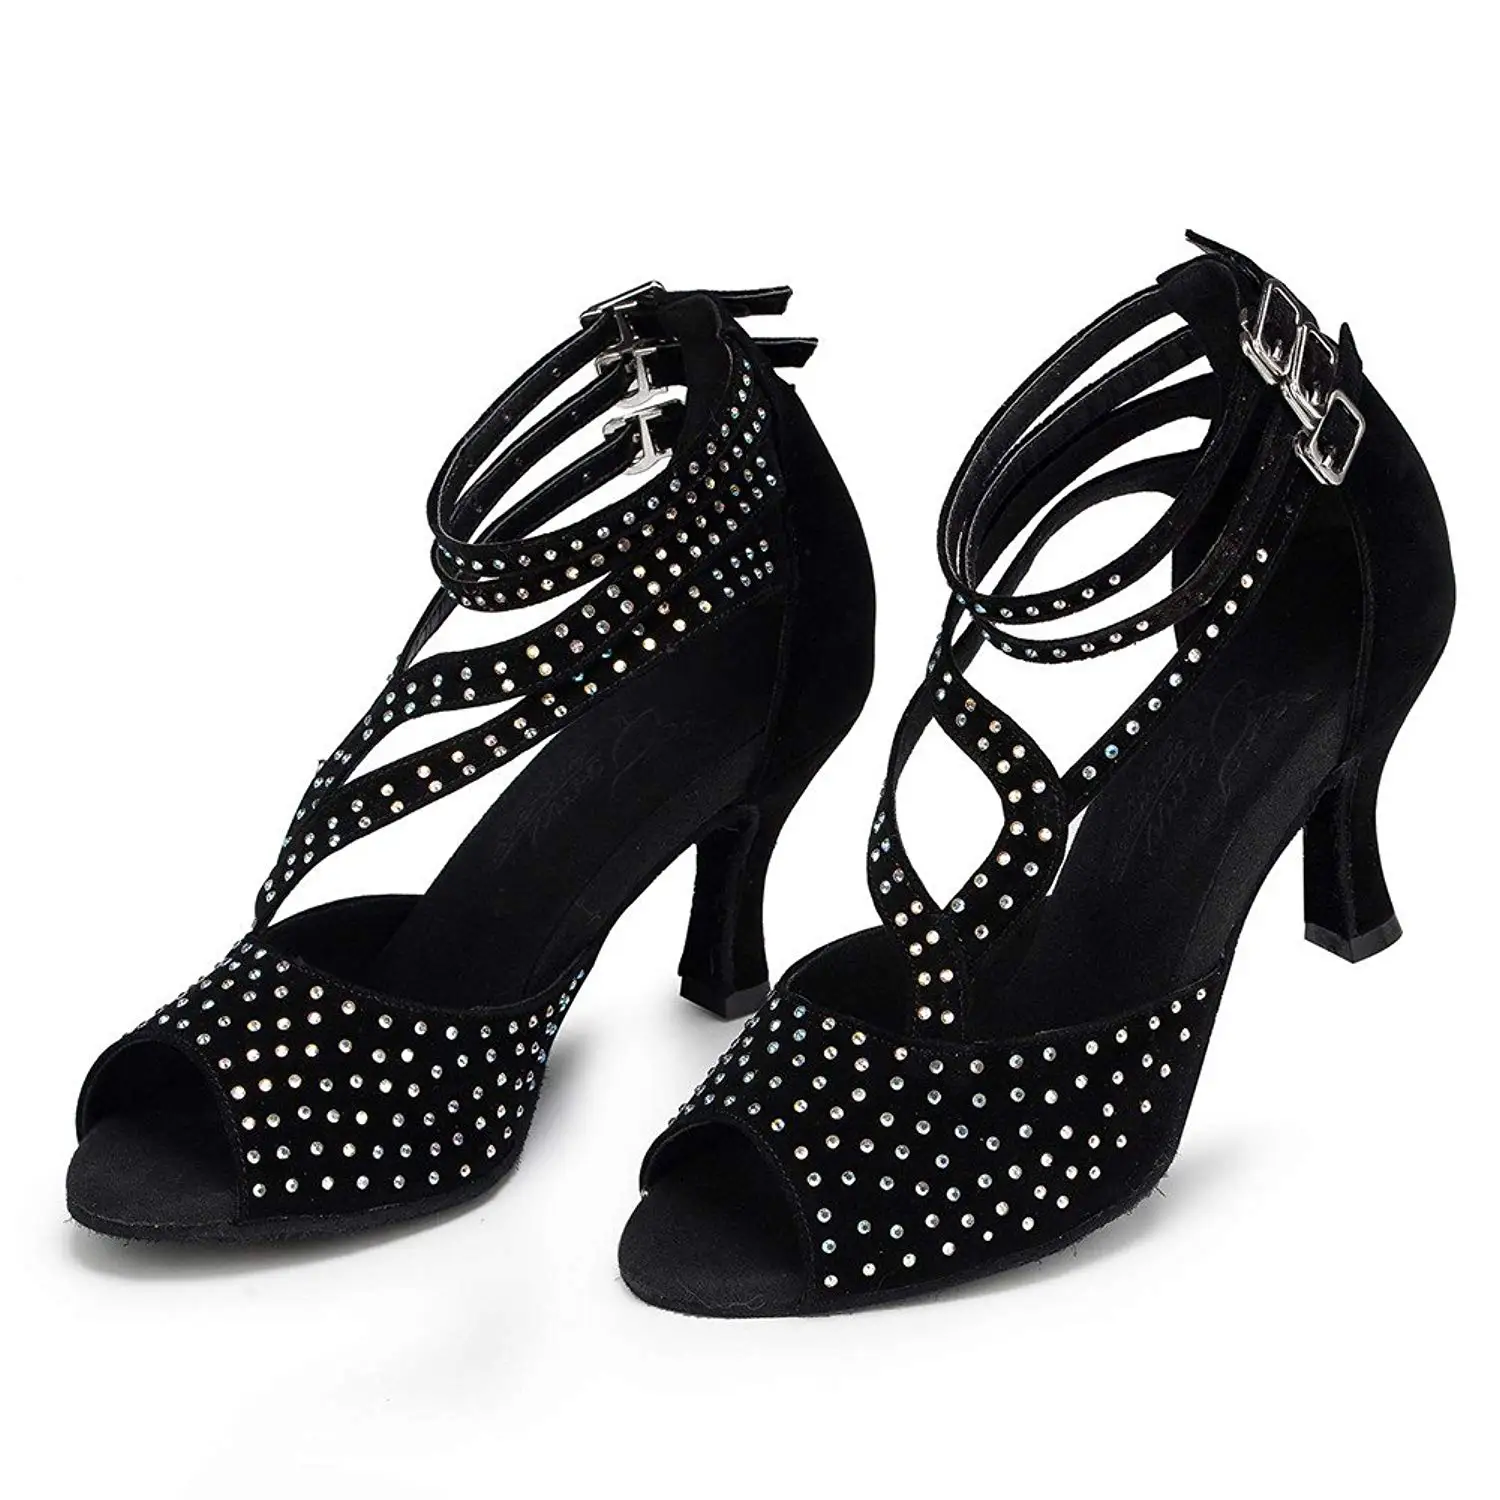 diamante line dance shoes